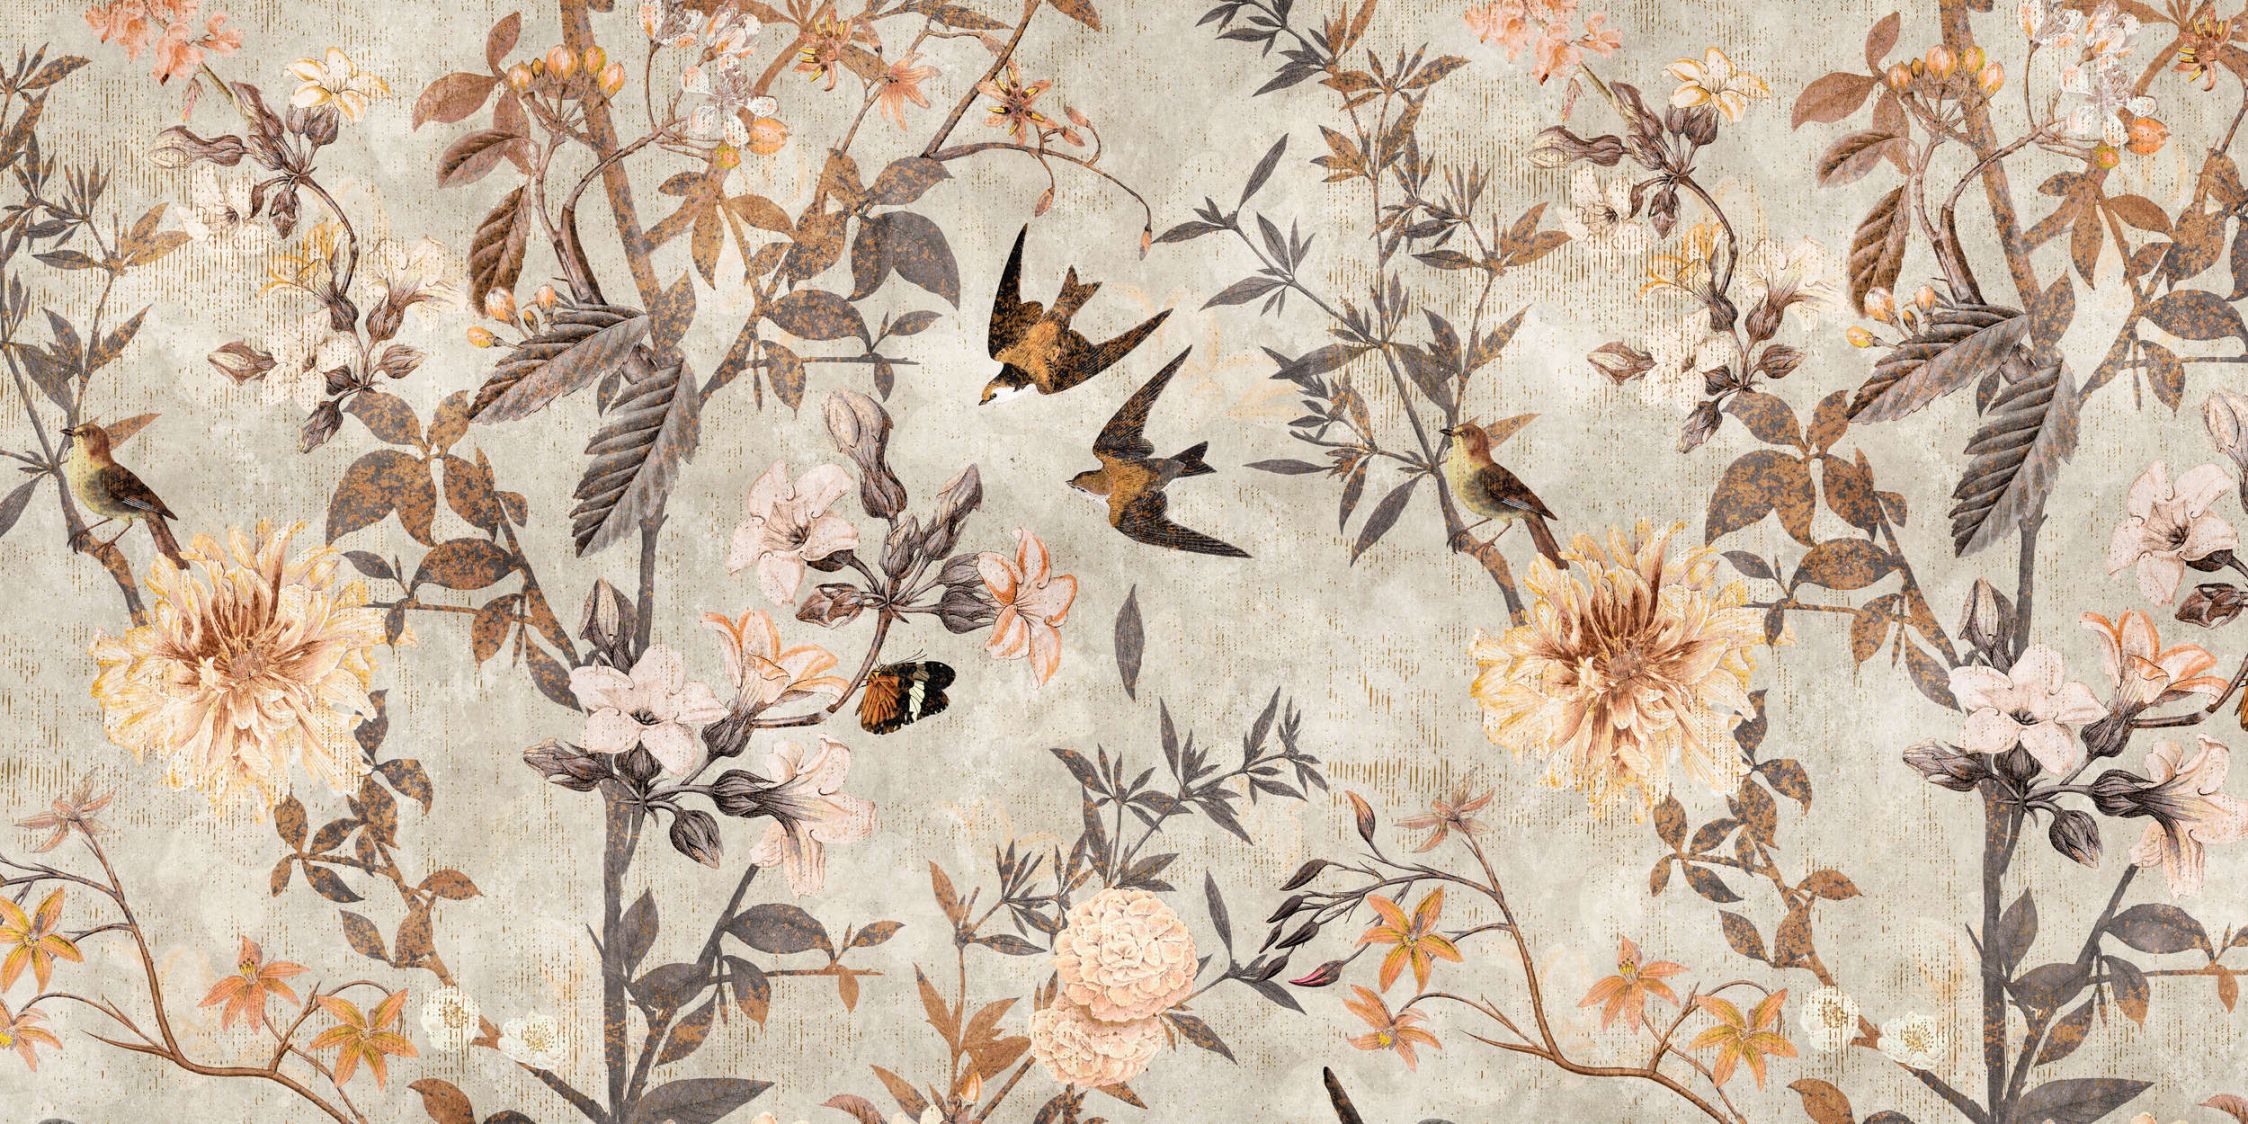             Digital behang »eden« - Vogels & bloemen in vintage stijl - Matte, gladde vliesstof
        